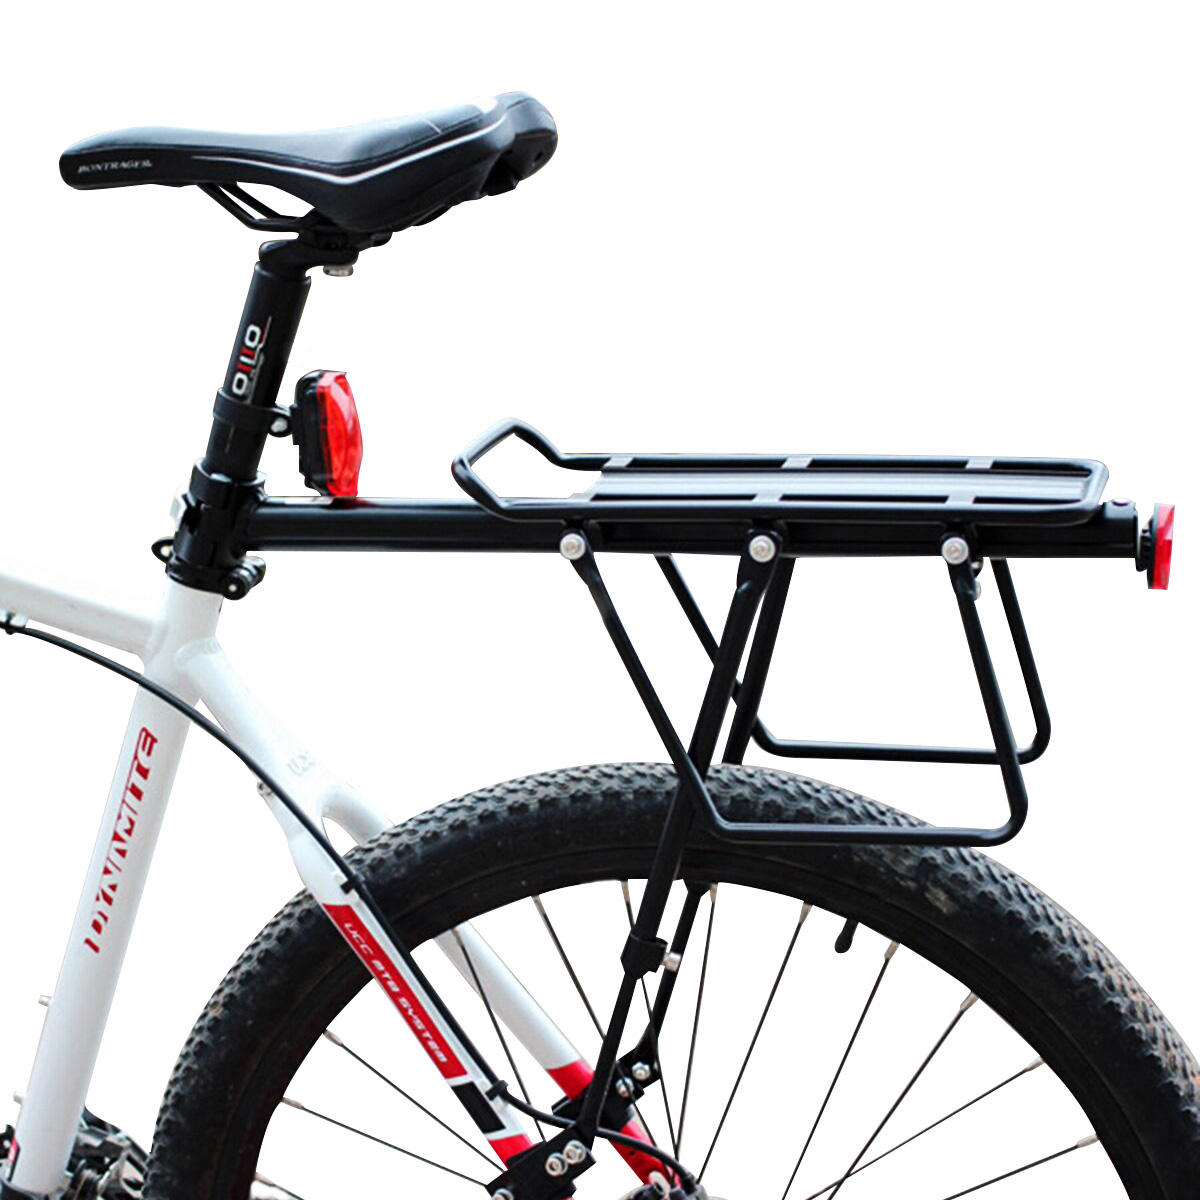 BIKIGHT Bicicleta bicicleta Carga Bastidor Asiento del respaldo del asiento trasero Lanzamiento rápido Equipaje Proteger